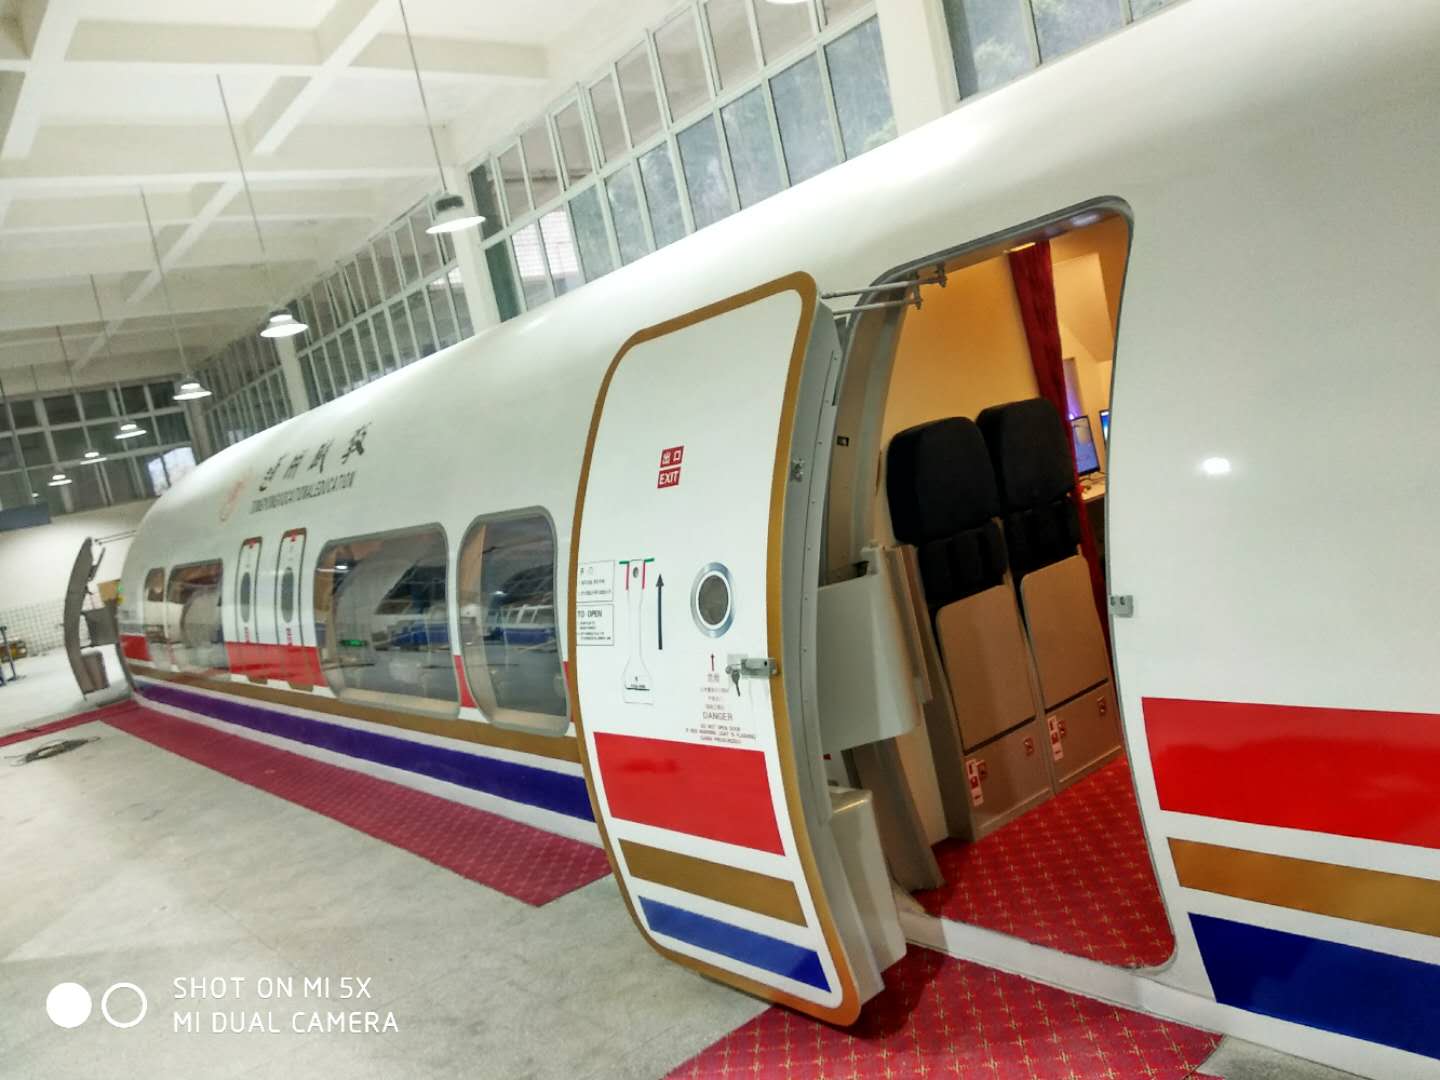 其他行业专用设备 廊坊有卖划算的轨道模拟训练舱广东模拟训练器价格